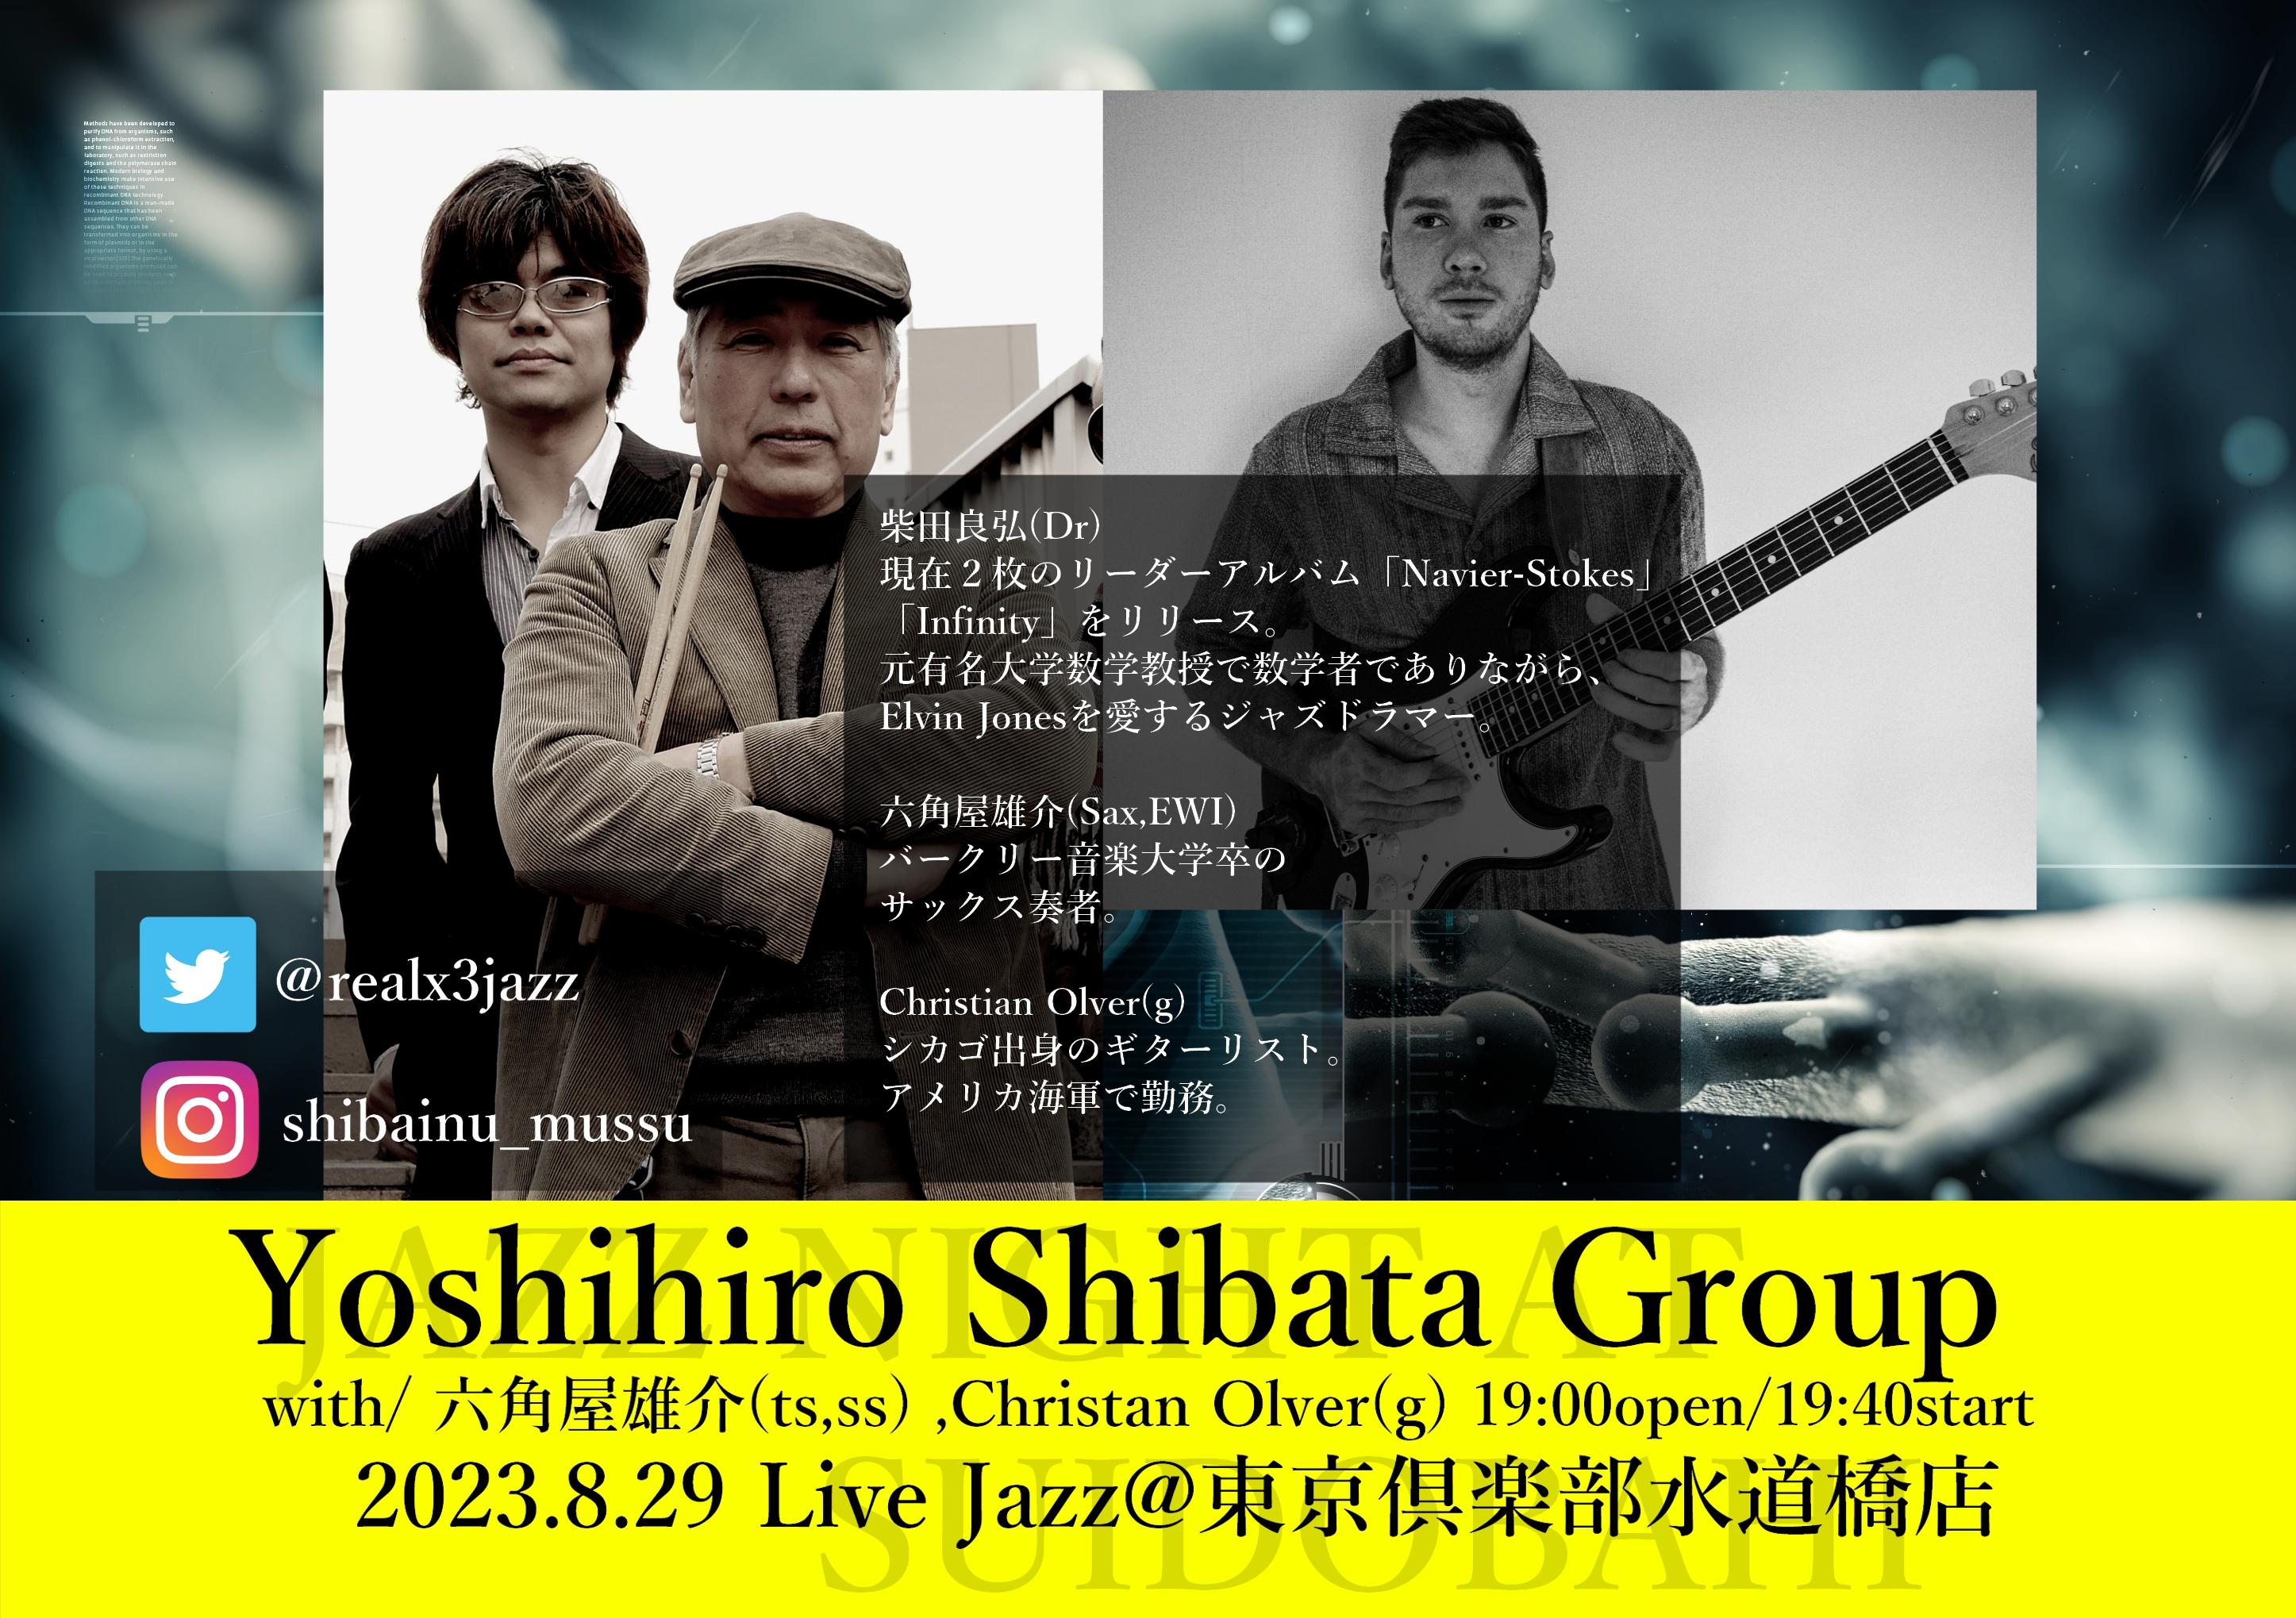 Yoshihiro Shibata Band